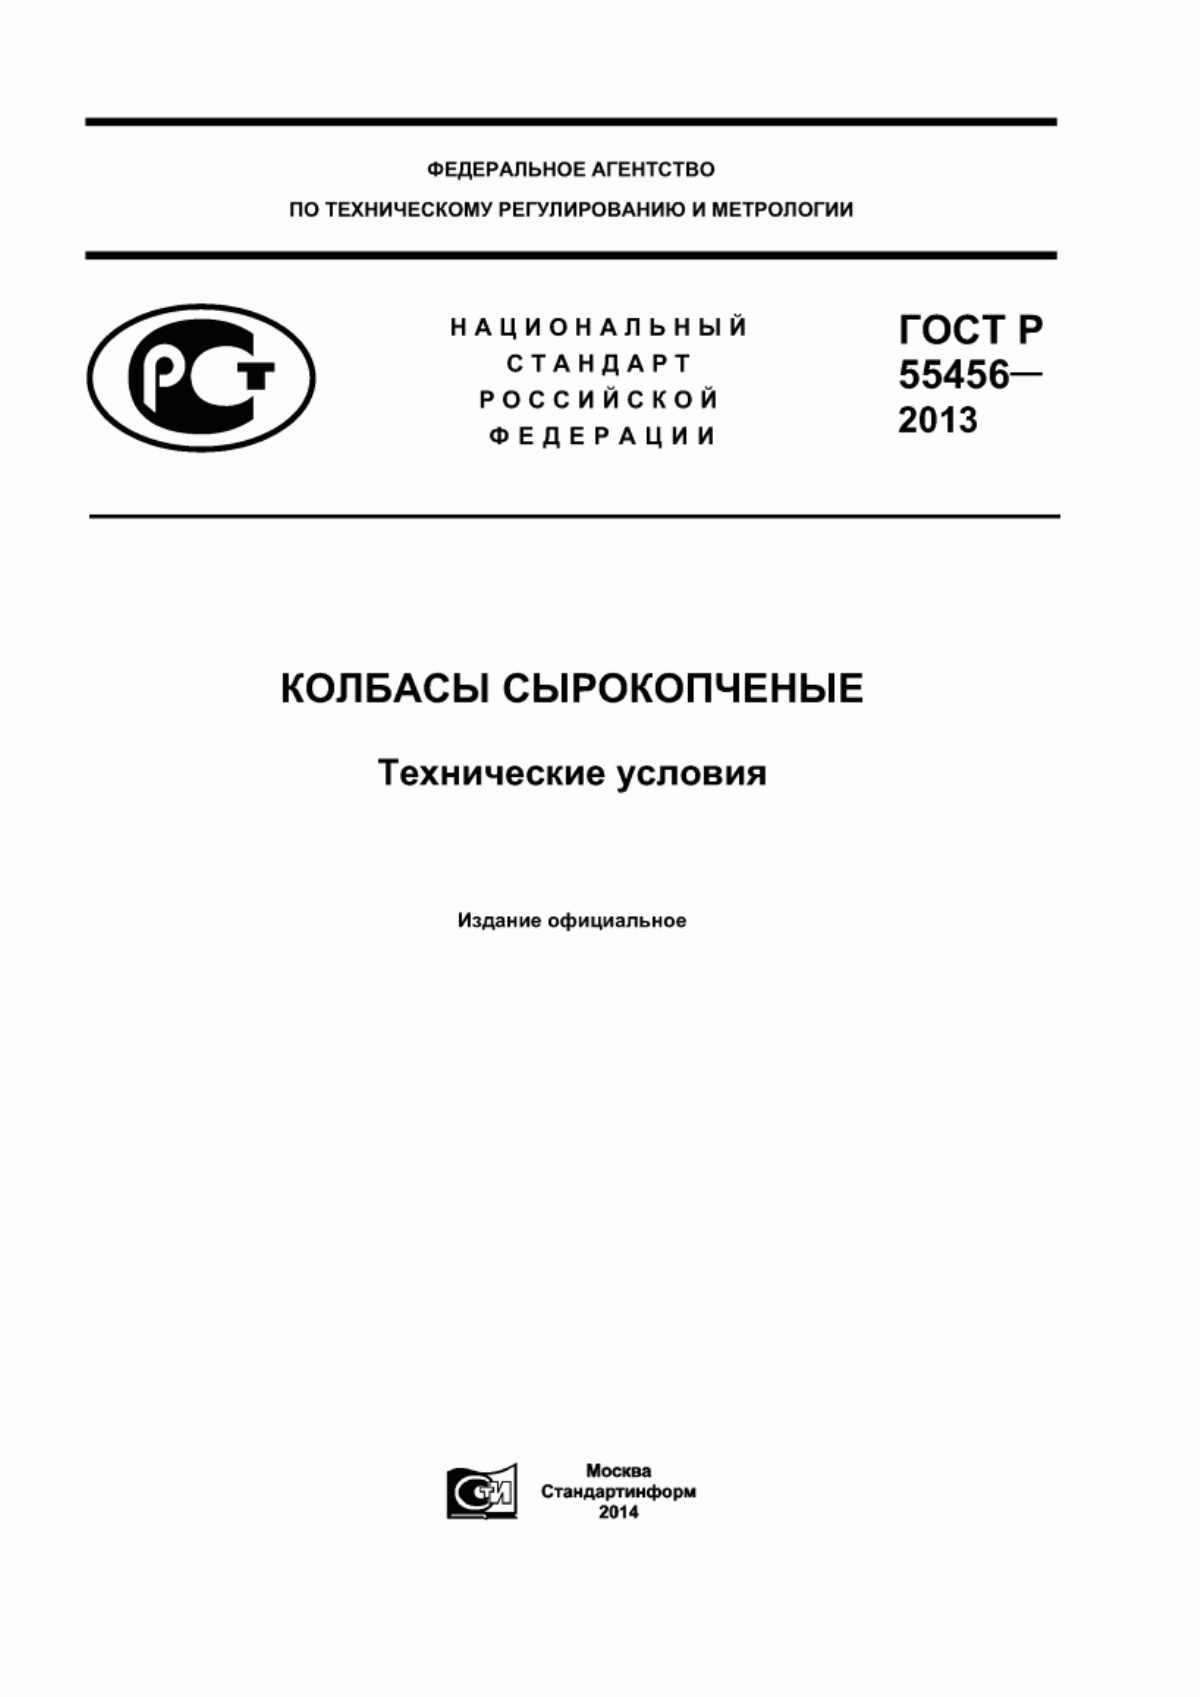 ГОСТ Р 55456-2013 Колбасы сырокопченые. Технические условия